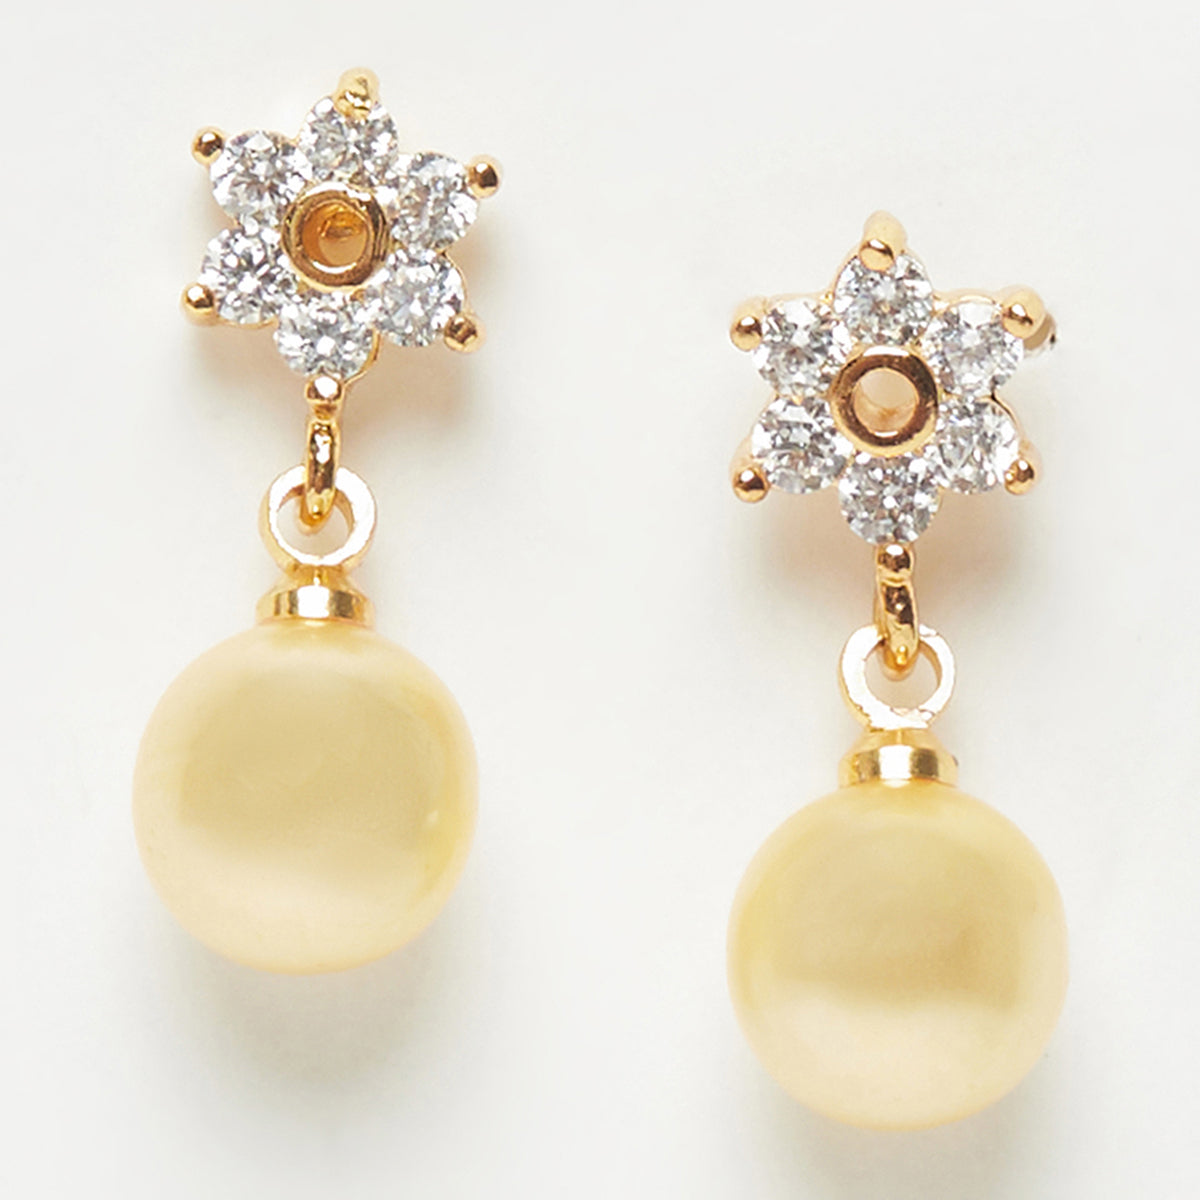 Pearl Drop Earrings Rose Gold Pearl Earring Statement Earrings Ear Jacket  Double Pearl Earring Gold Dangle Earrings Pearl Stud Earring - Etsy